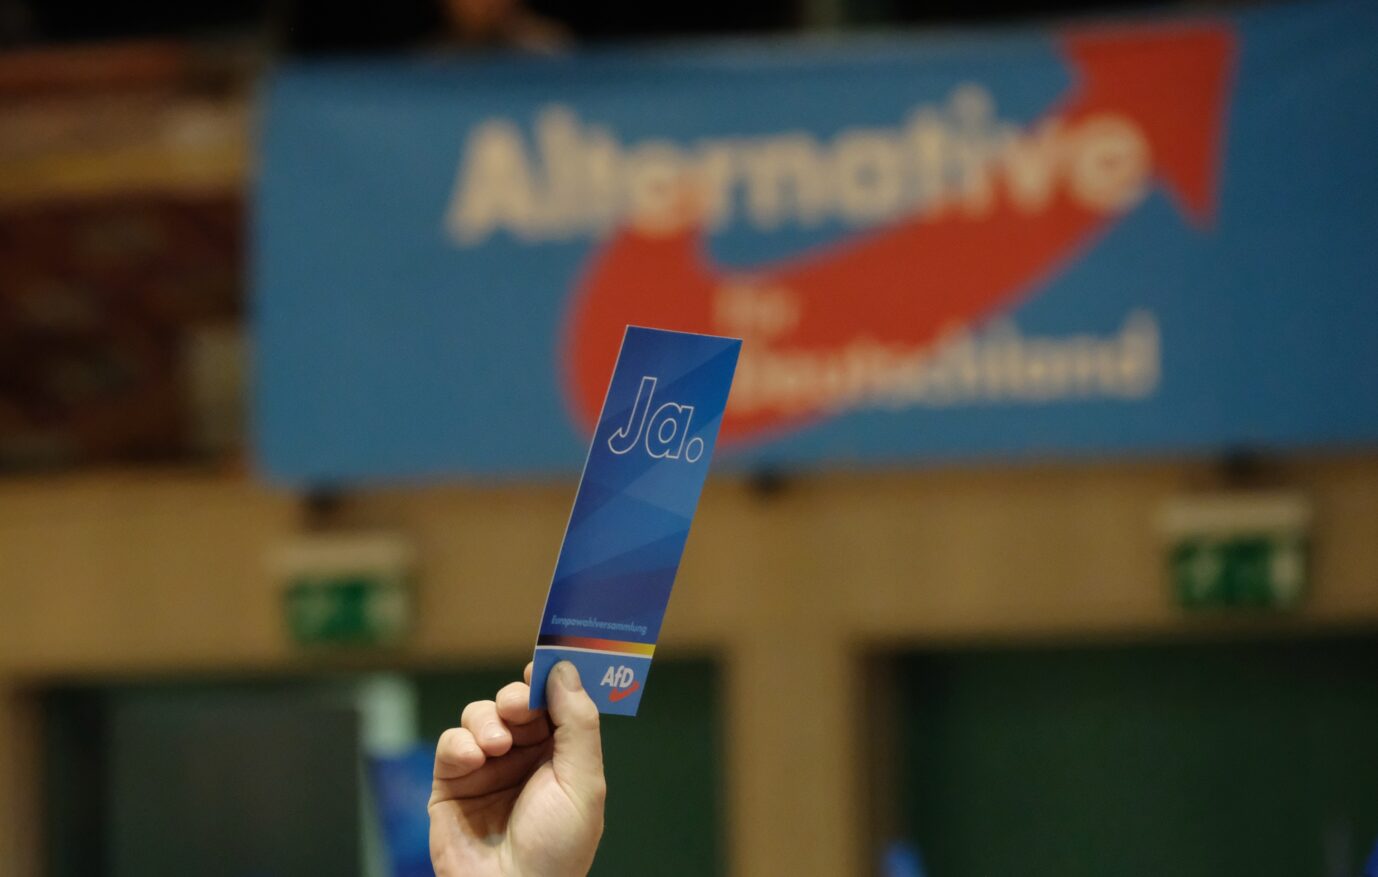 AfD-Stimmkarte (Symbolbild): Die CDU votierte im Bautzener Kreistag für einen AfD-Antrag zu neuen Integrationsrichtlinien